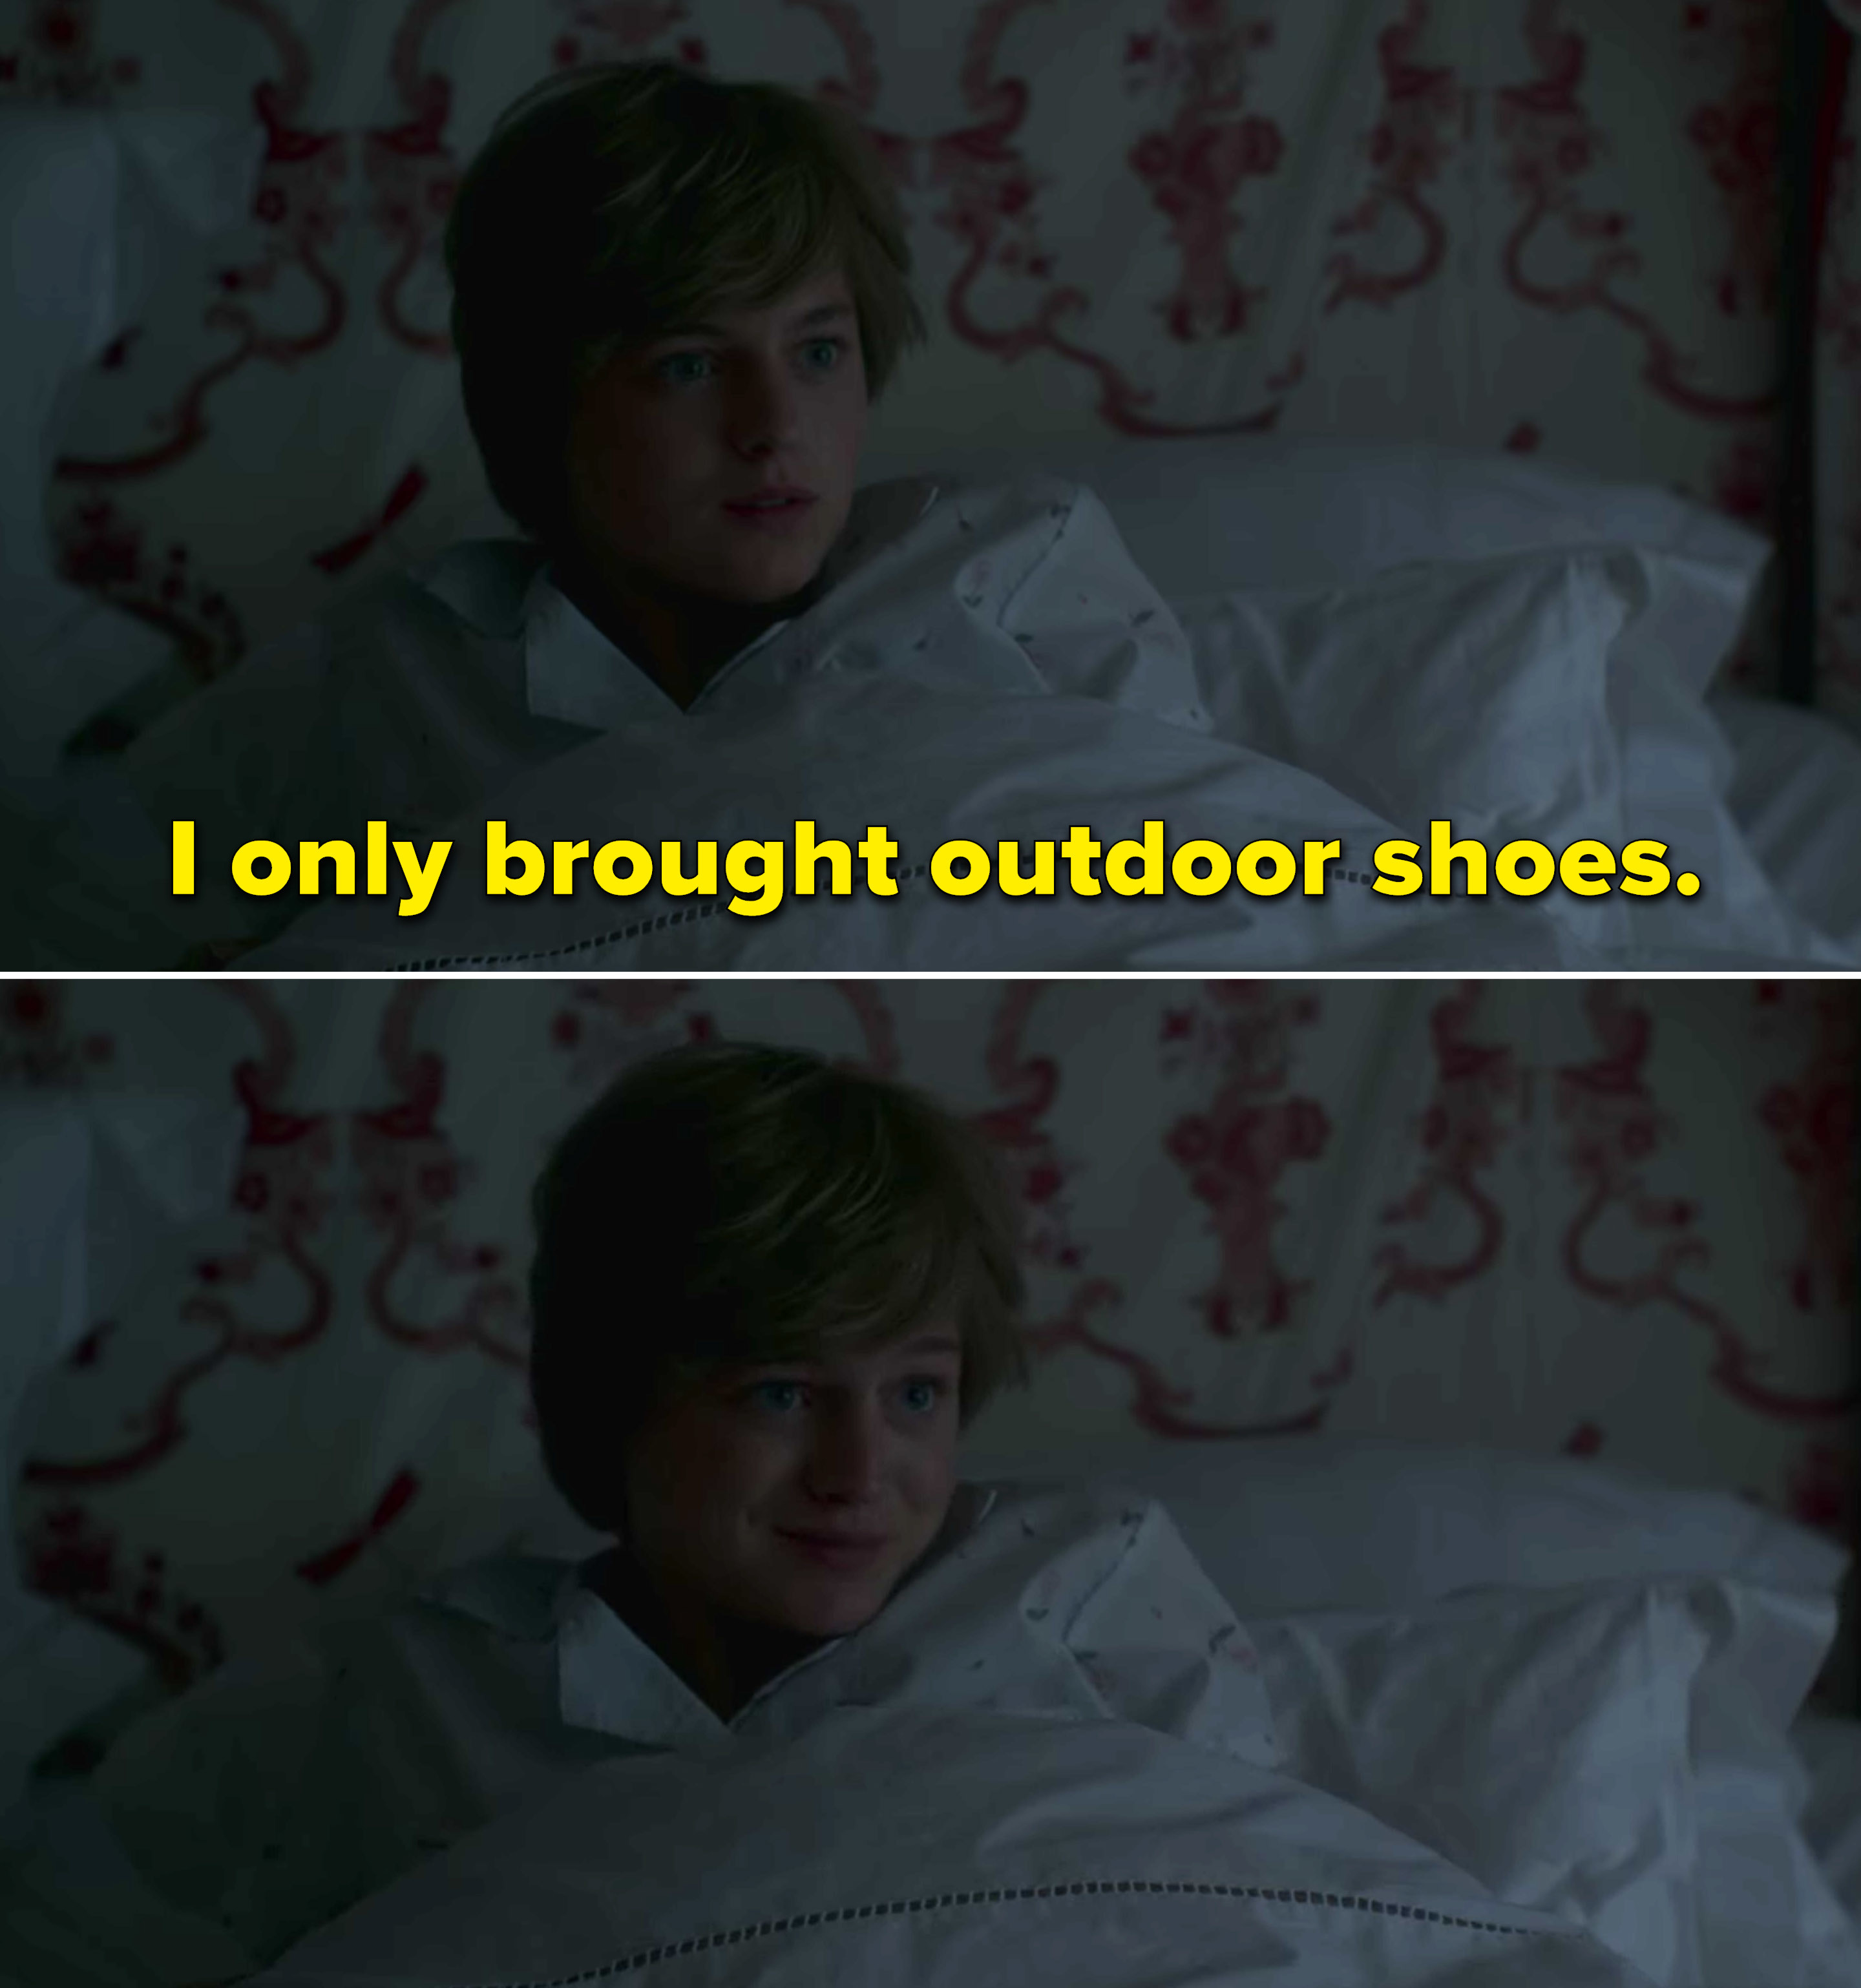 戴安娜说,“我只给户外shoes"